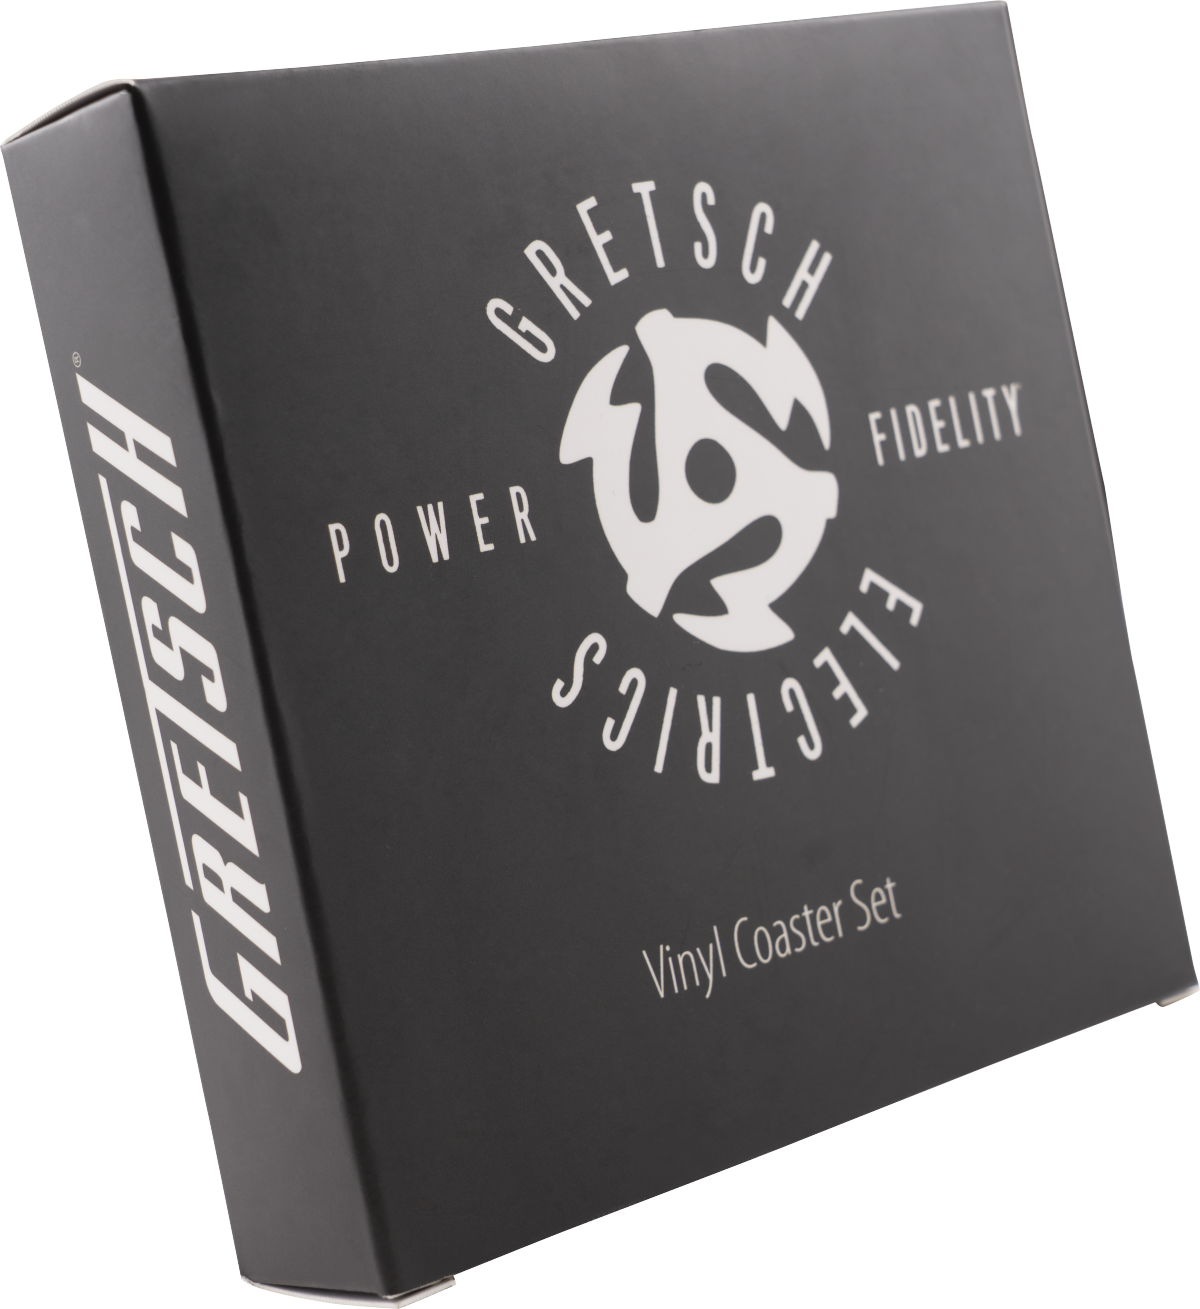 Gretsch Power & Fidelity Vinyl Coaster Set - Dessous De Verre & Sous Bock - Variation 3